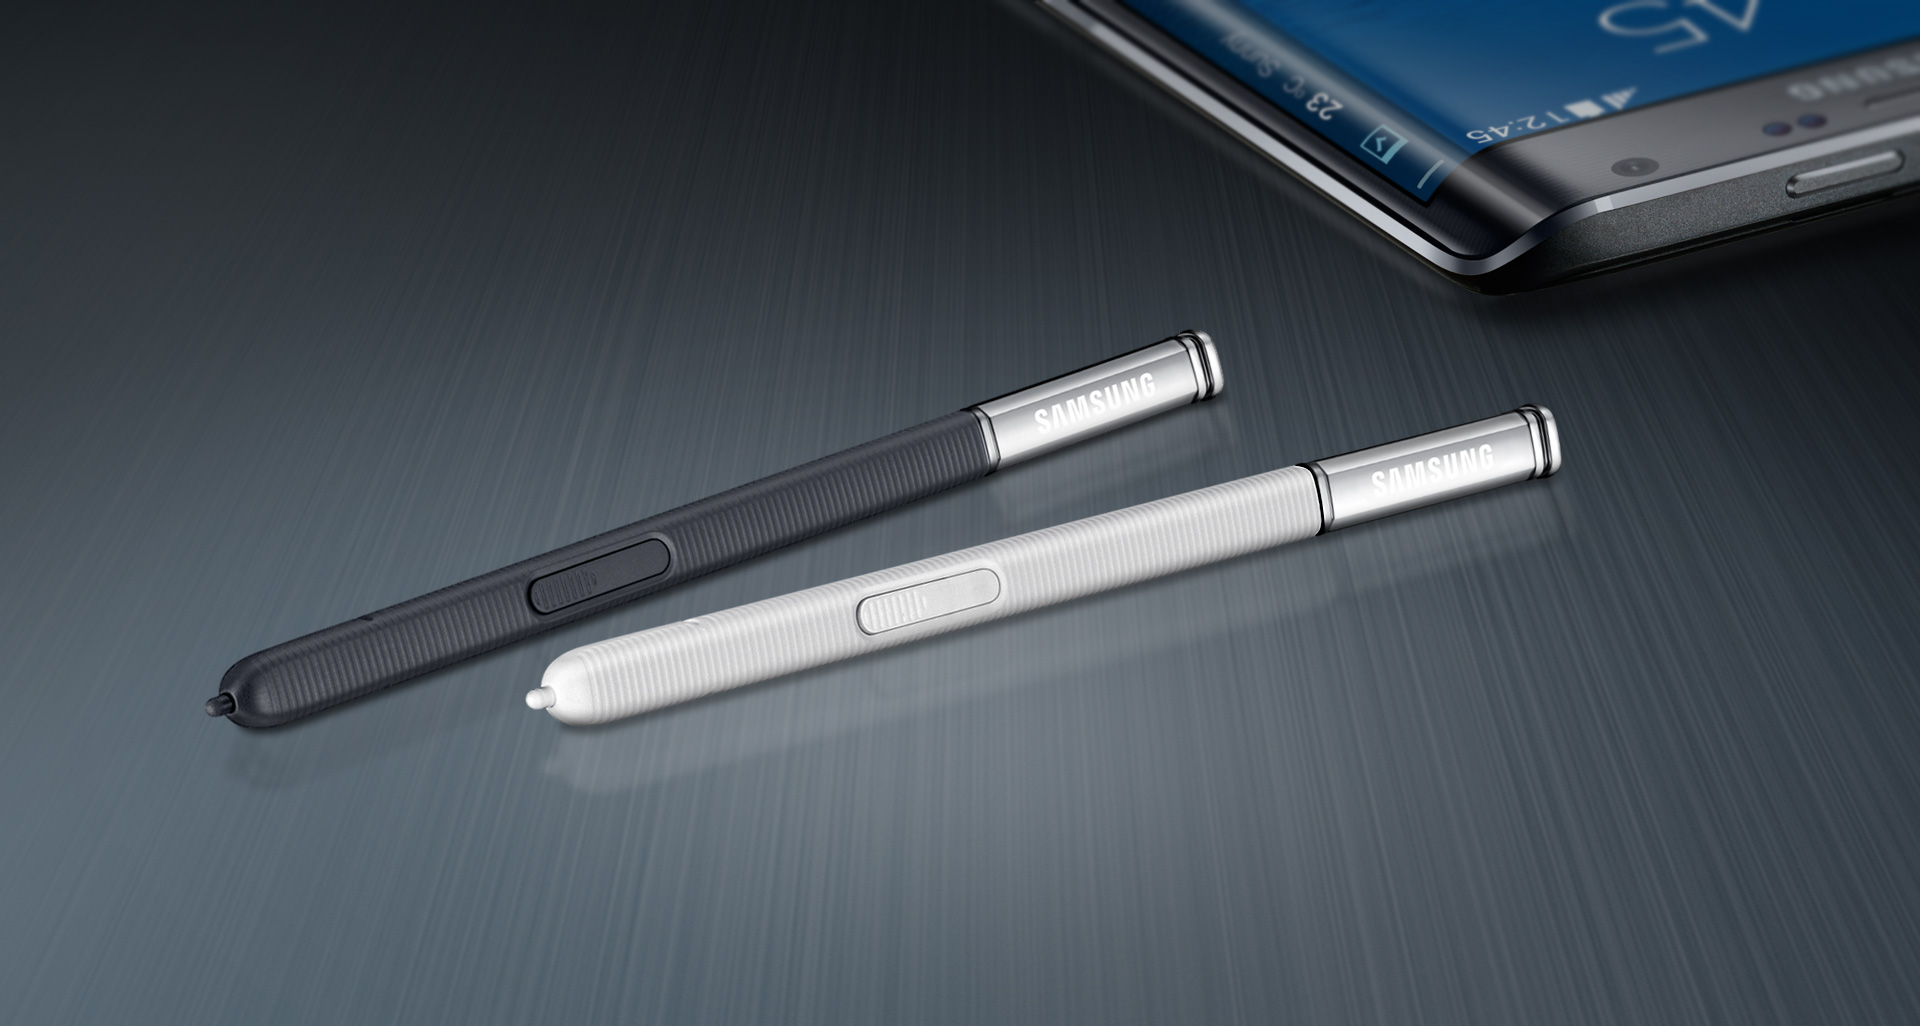 มีเฮ! Samsung จดสิทธิบัตรเคสพิเศษใช้ S Pen ได้กับมือถือทุกรุ่นในอนาคต